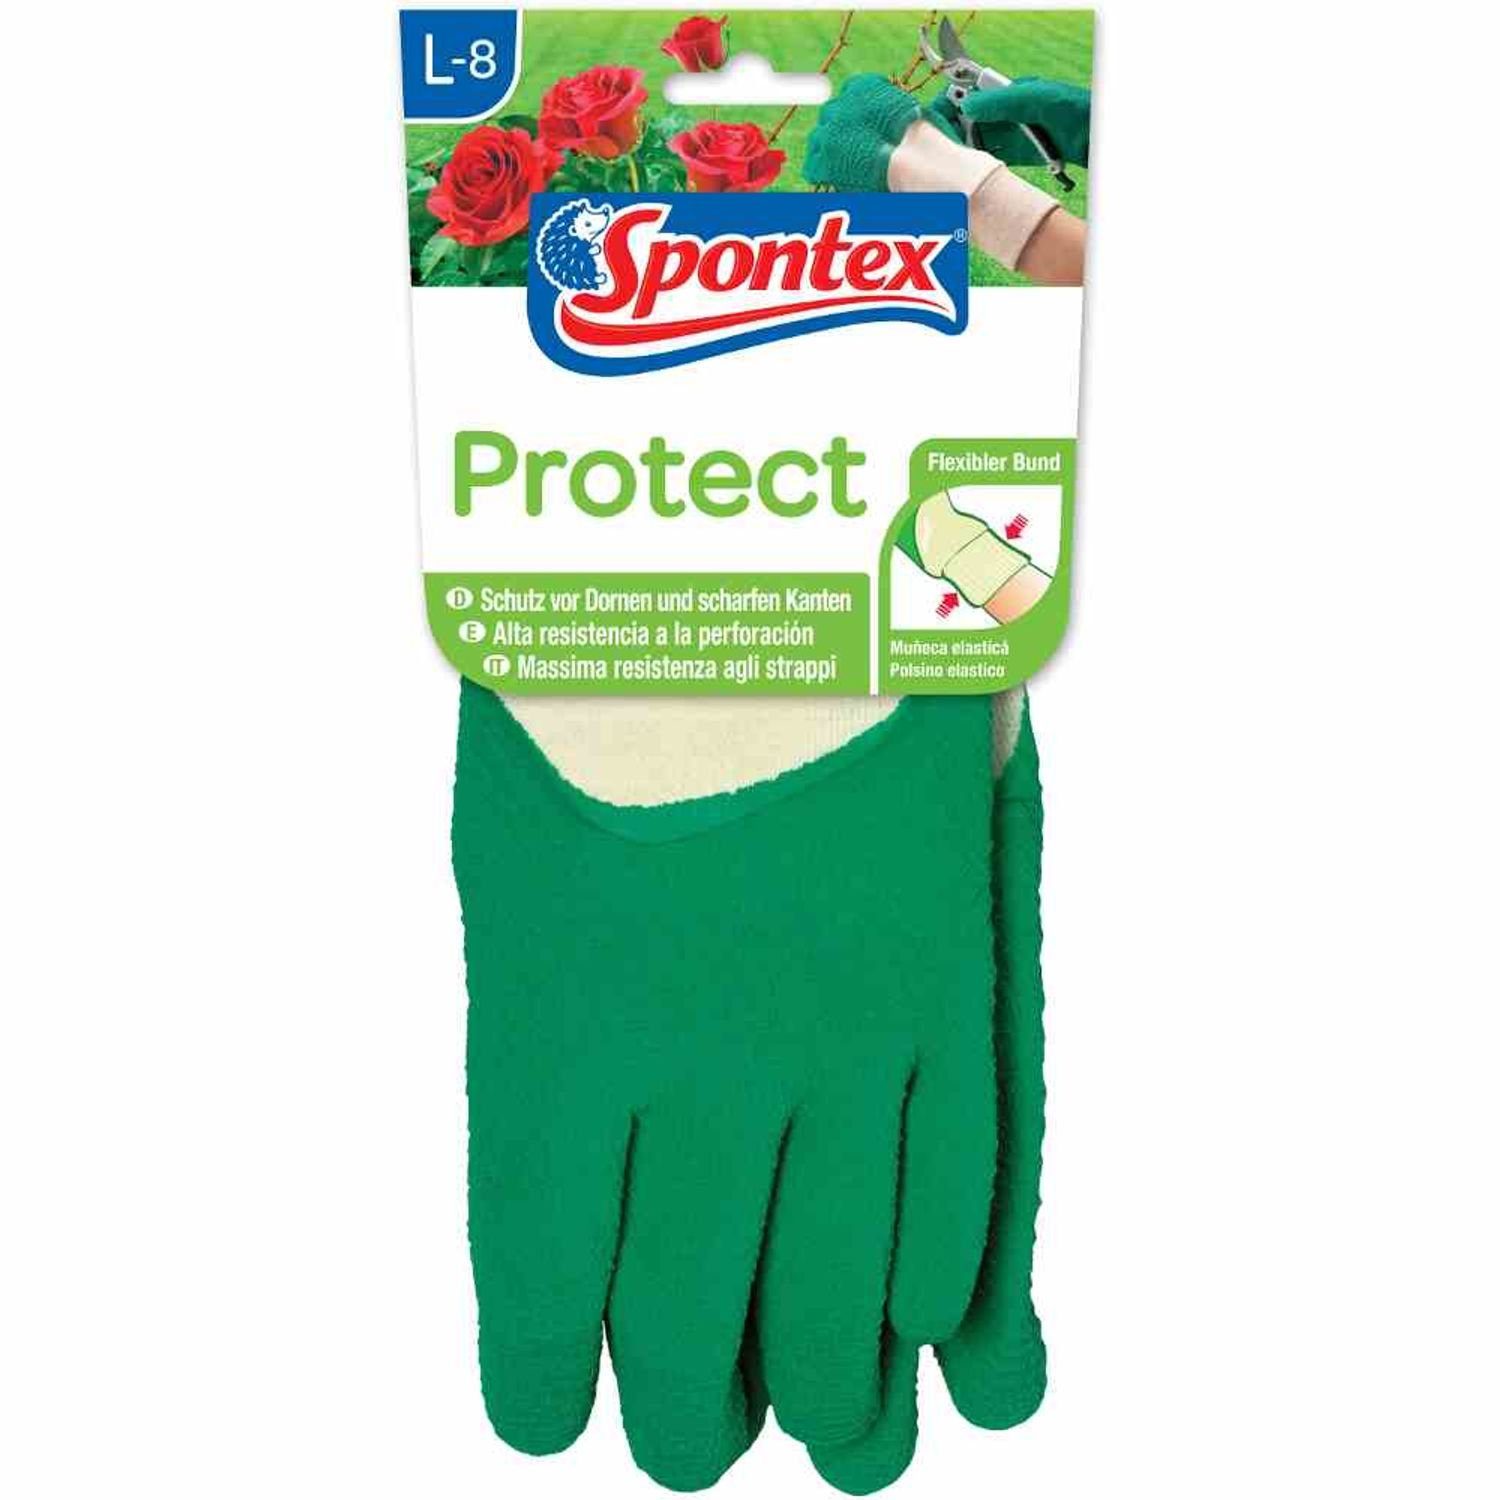 SPONTEX Gartenhandschuhe Schutzhandschuh Protect 8 Gartenhandschuh Gr